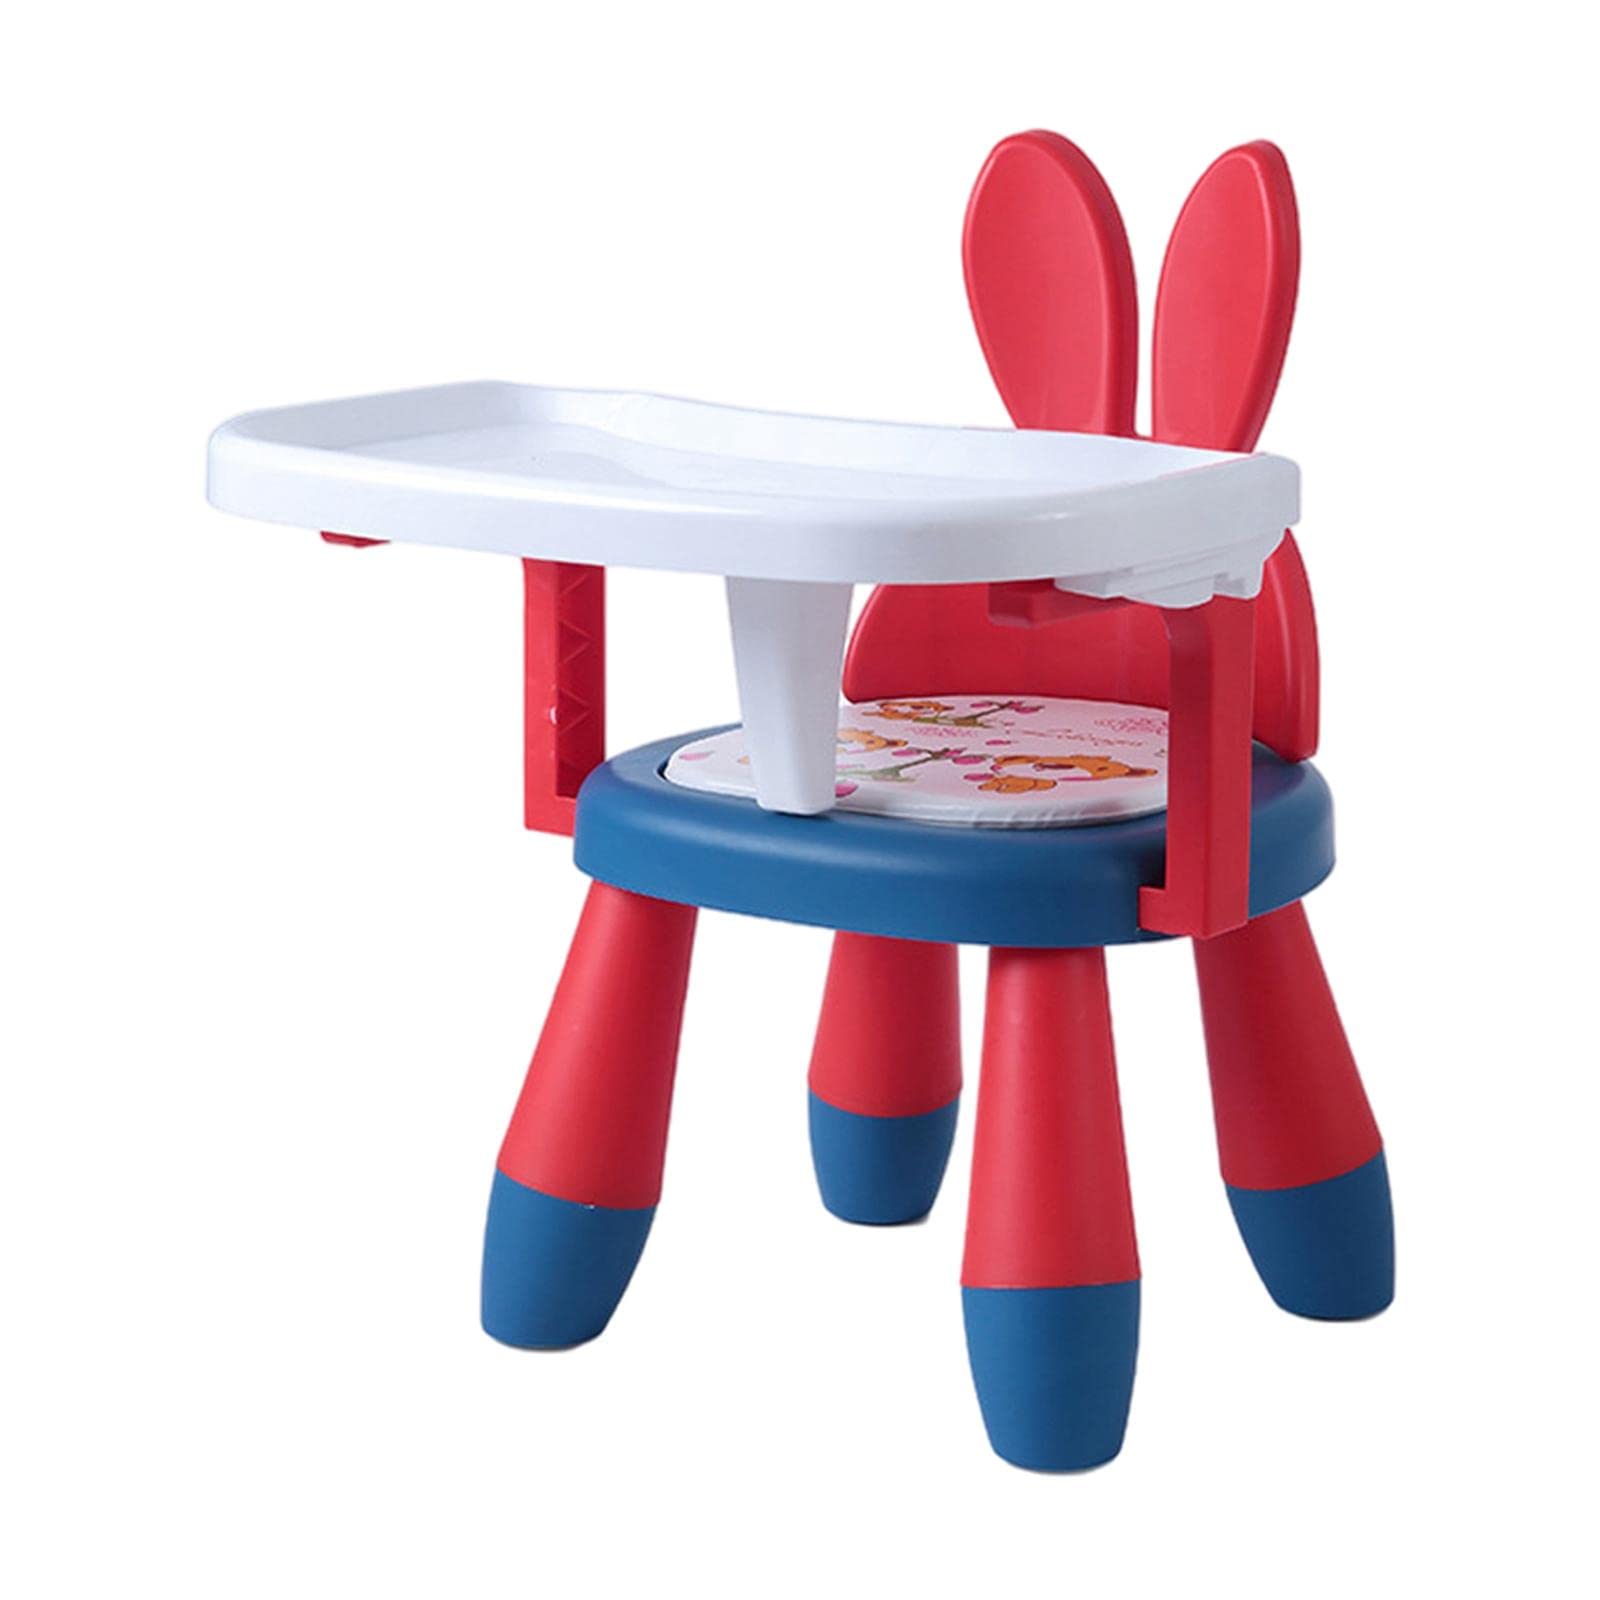 Tragbarer Babystuhl PVC- mit Tablett -Esstisch Niedriger Hocker Leicht zu reinigen für Kleinkind-Rasen-Kinder-Badezimmer-Stuhl, Rotes blaues Kaninchen